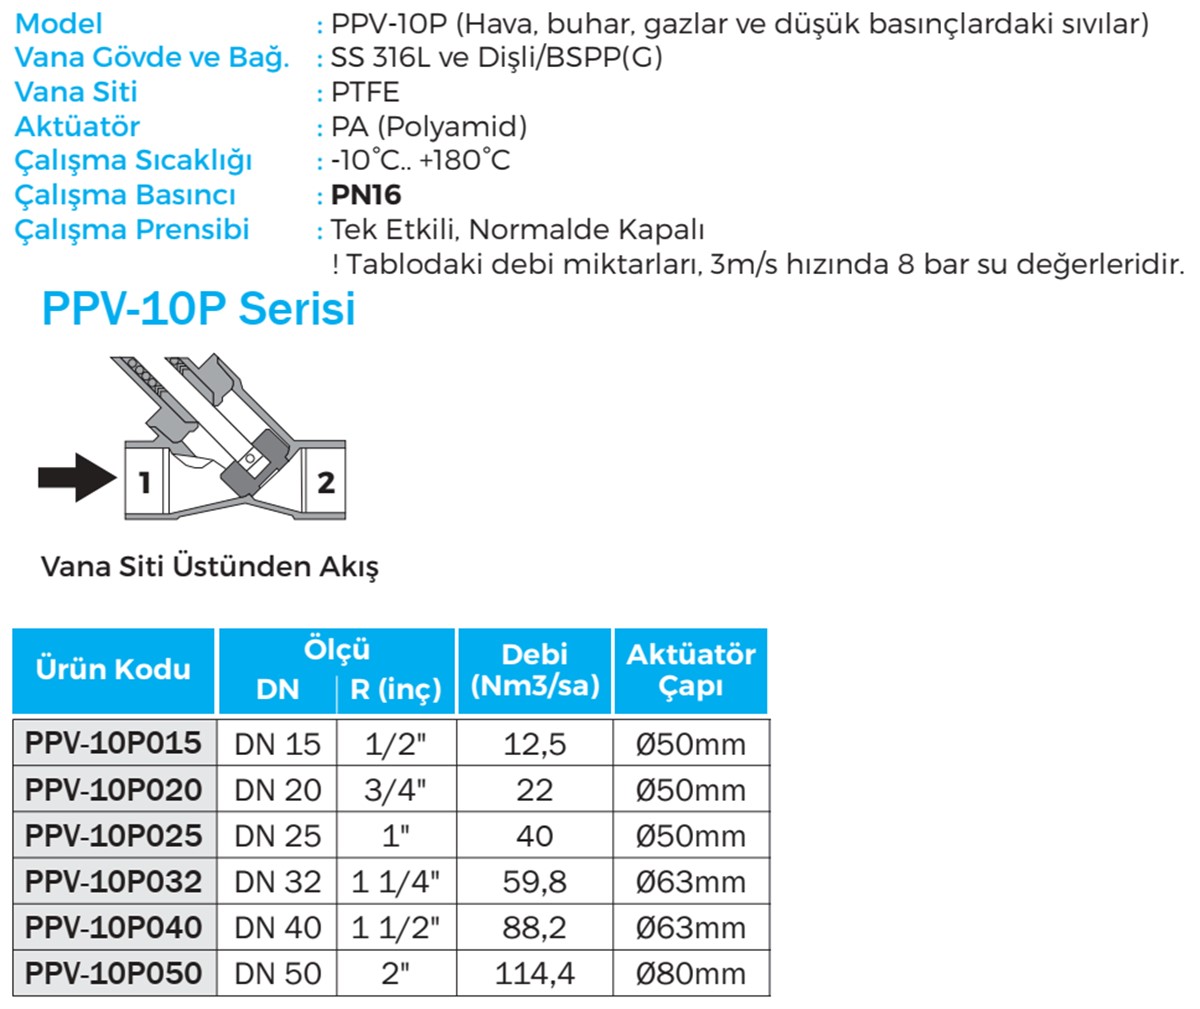 Duravis - PPV-10P Details (1200 x 1009).jpg (174 KB)